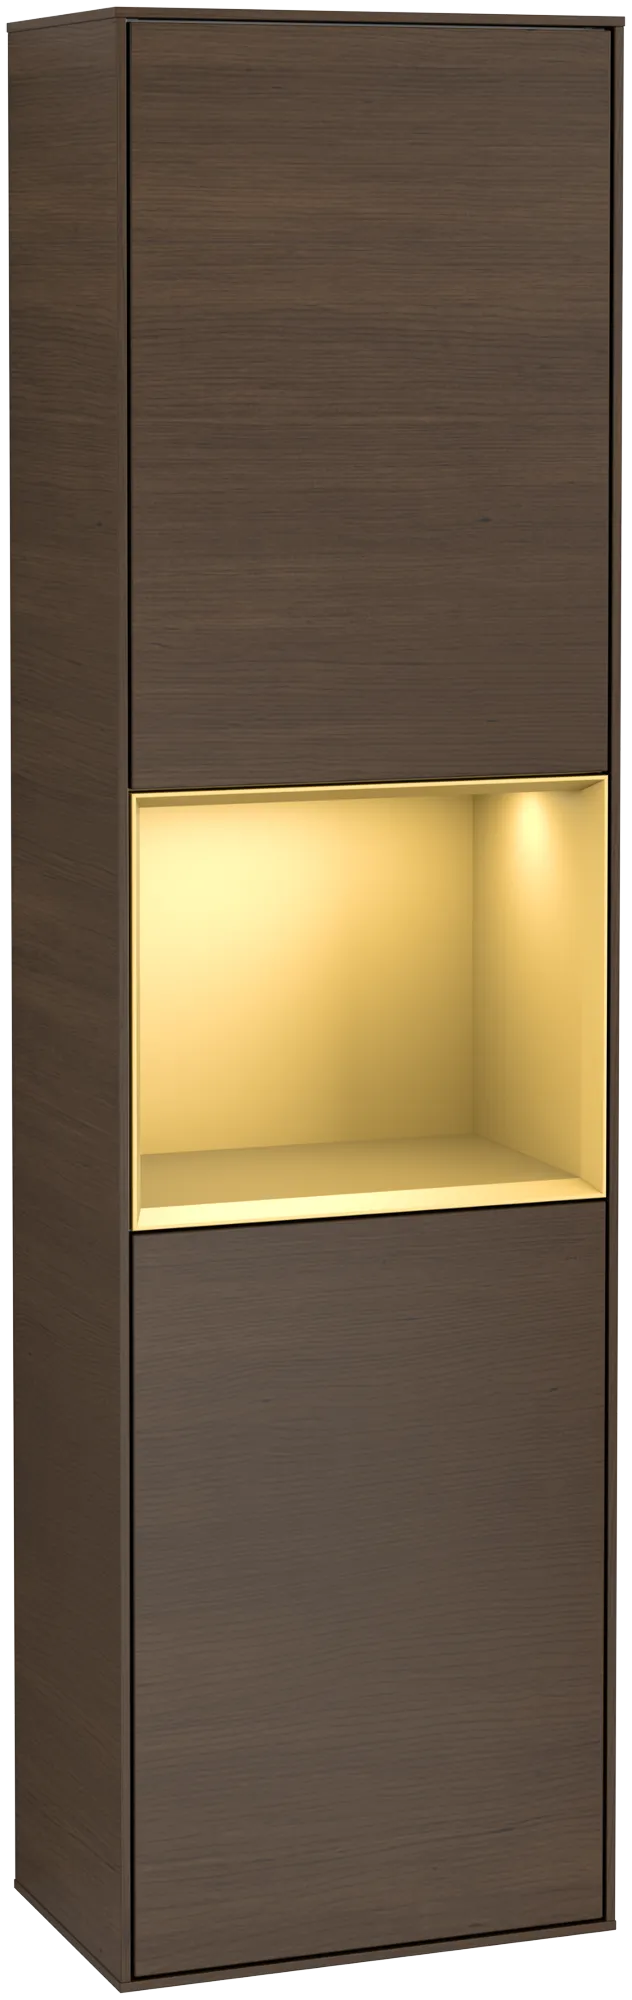 Bild von VILLEROY BOCH Finion Hochschrank, mit Beleuchtung, 2 Türen, 418 x 1516 x 270 mm, Walnut Veneer / Gold Matt Lacquer #G470HFGN